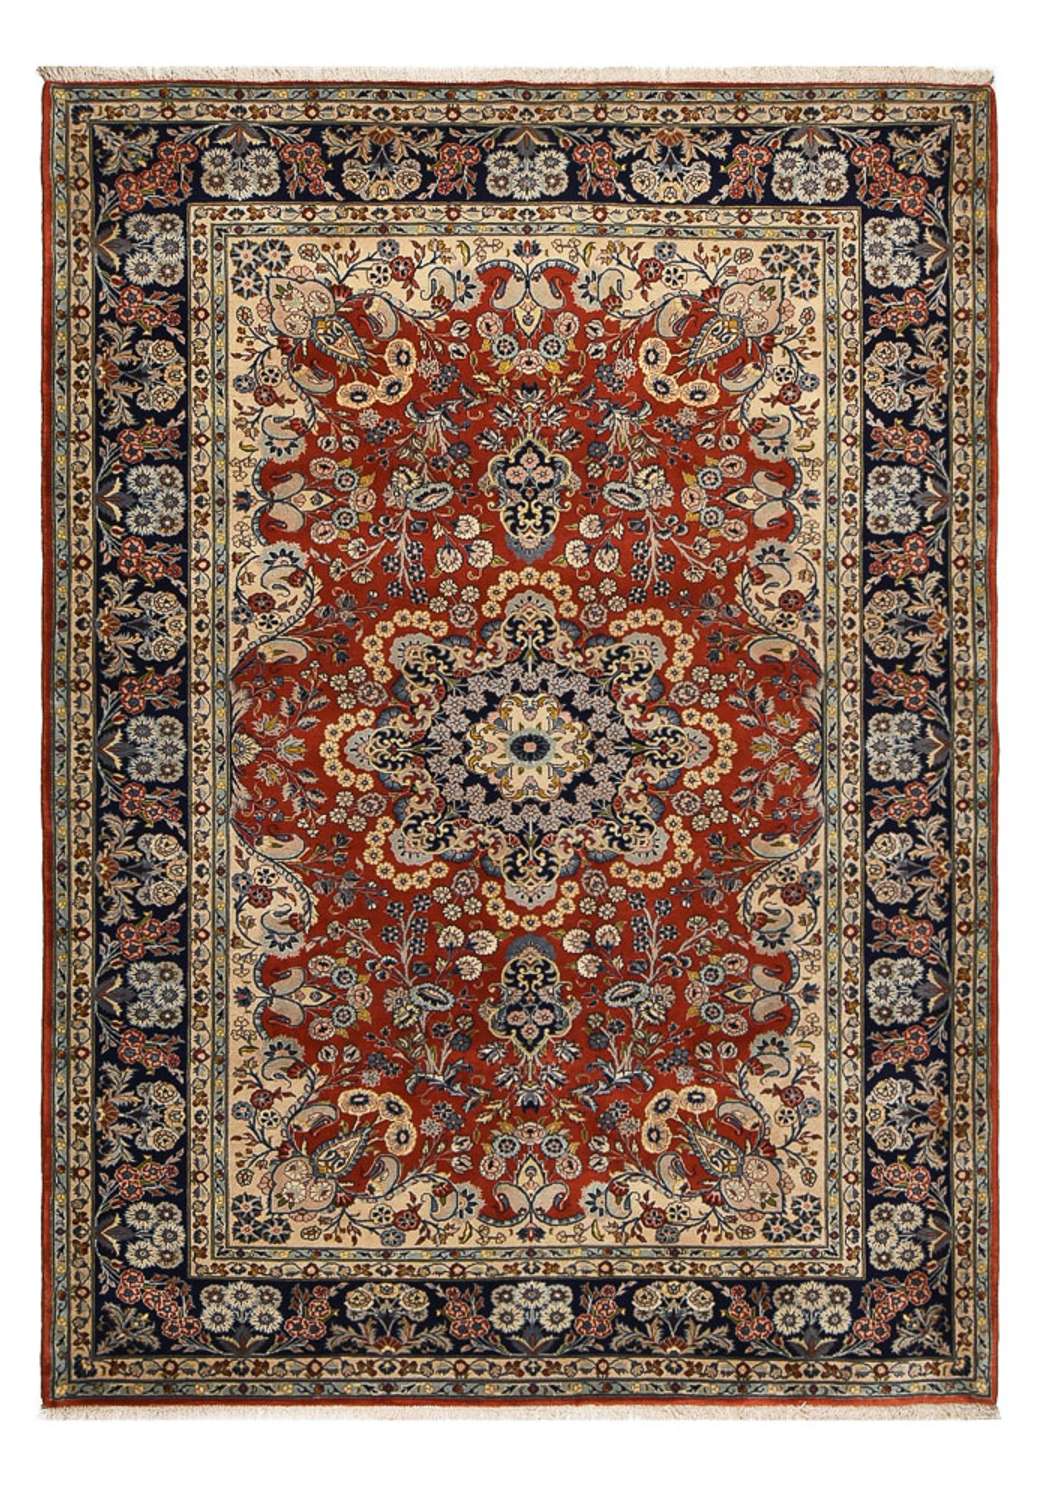 Dywan perski - Keshan - 288 x 208 cm - ciemna czerwień